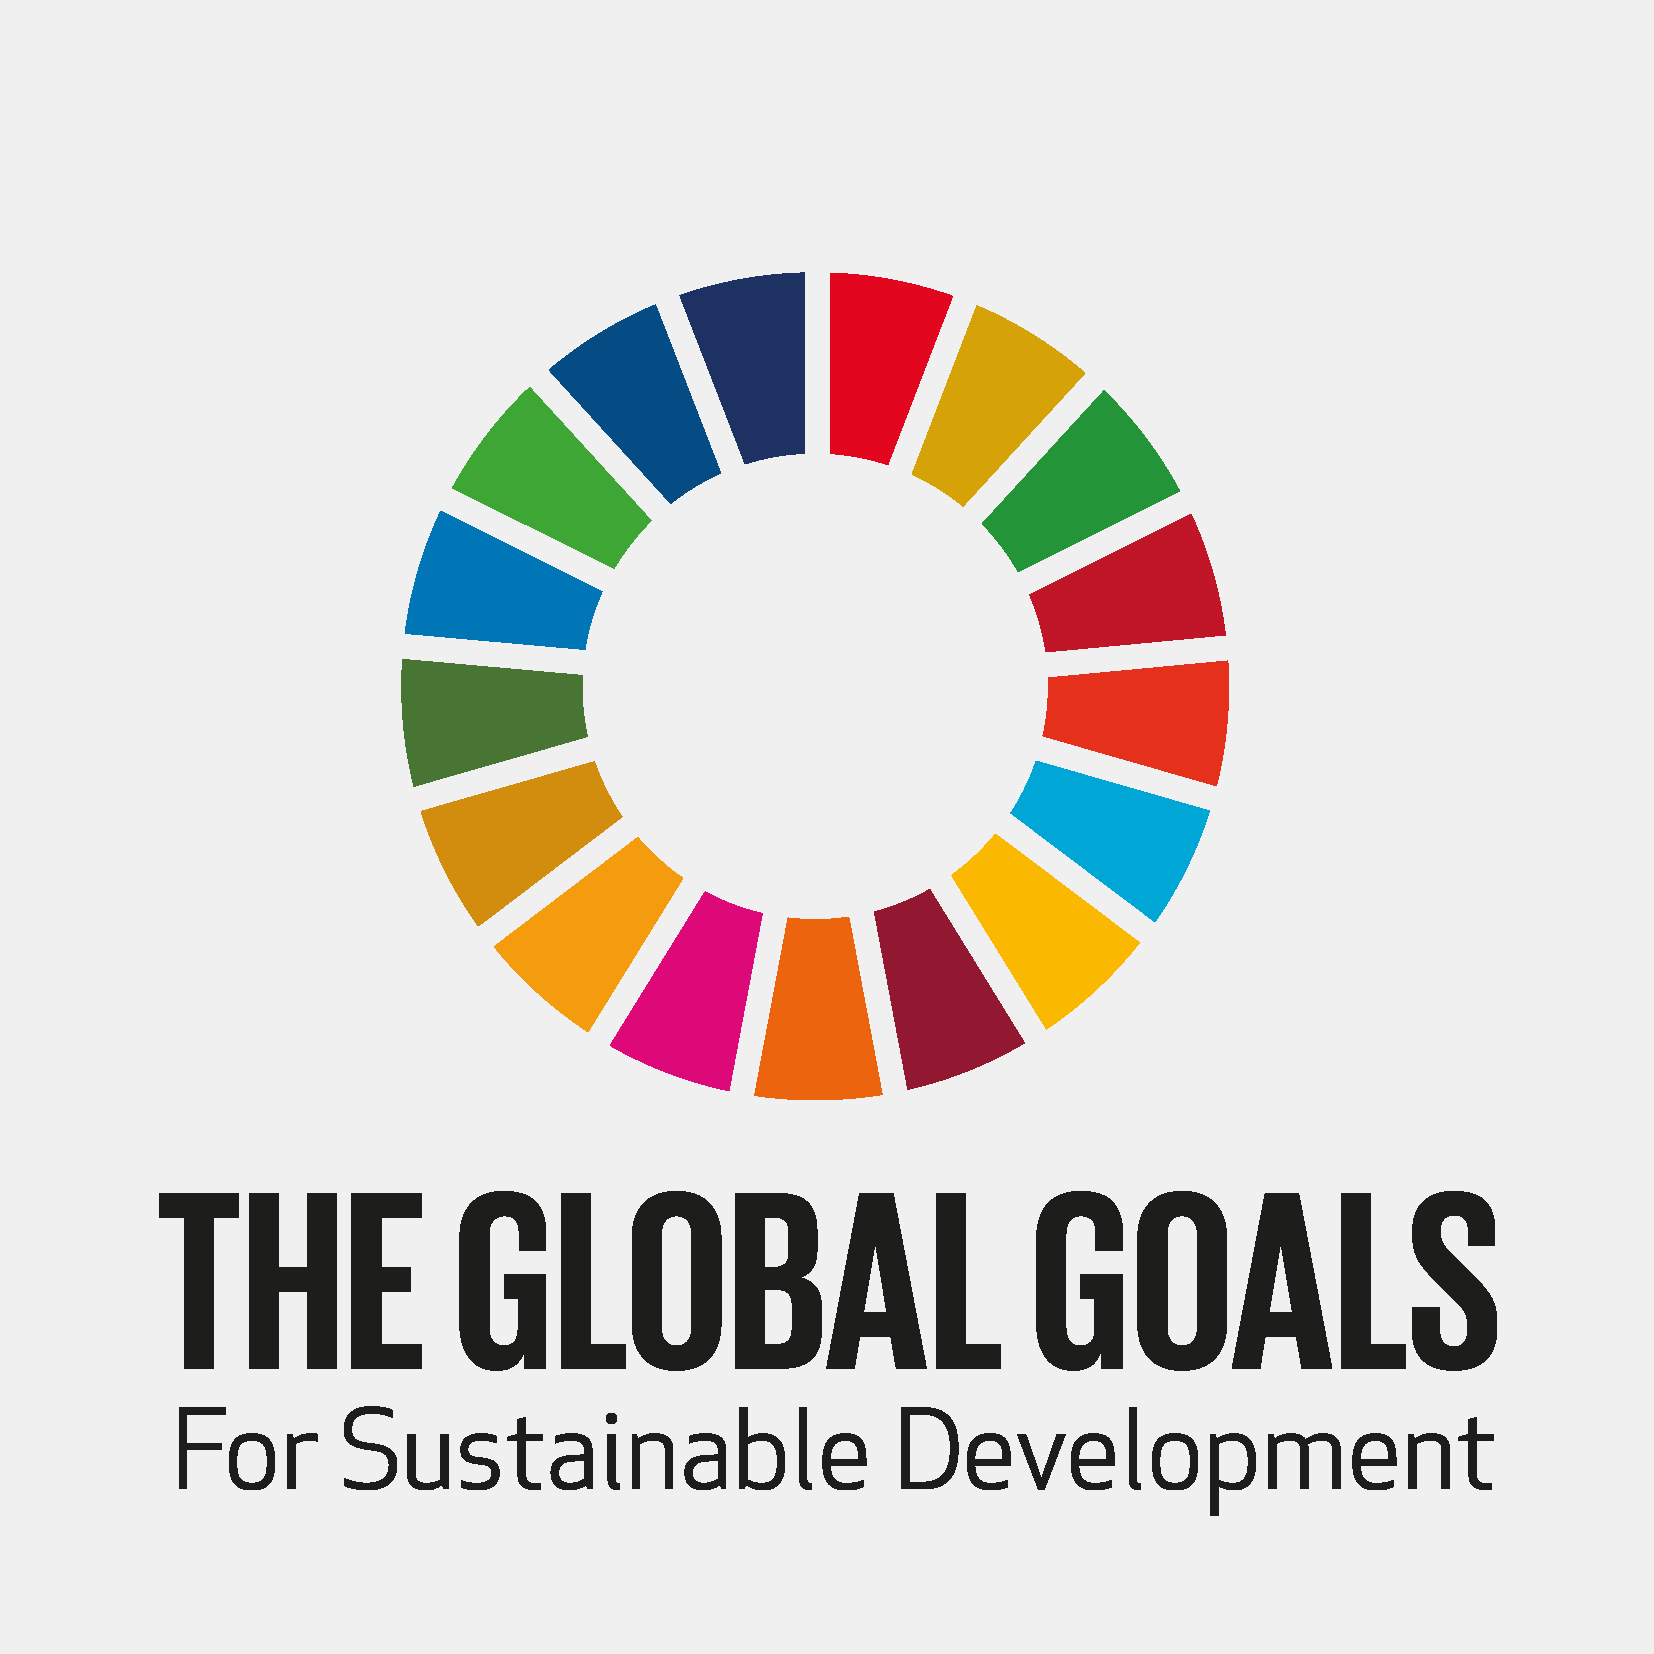 FN verdensmål for bæredygtig udviklingslogo